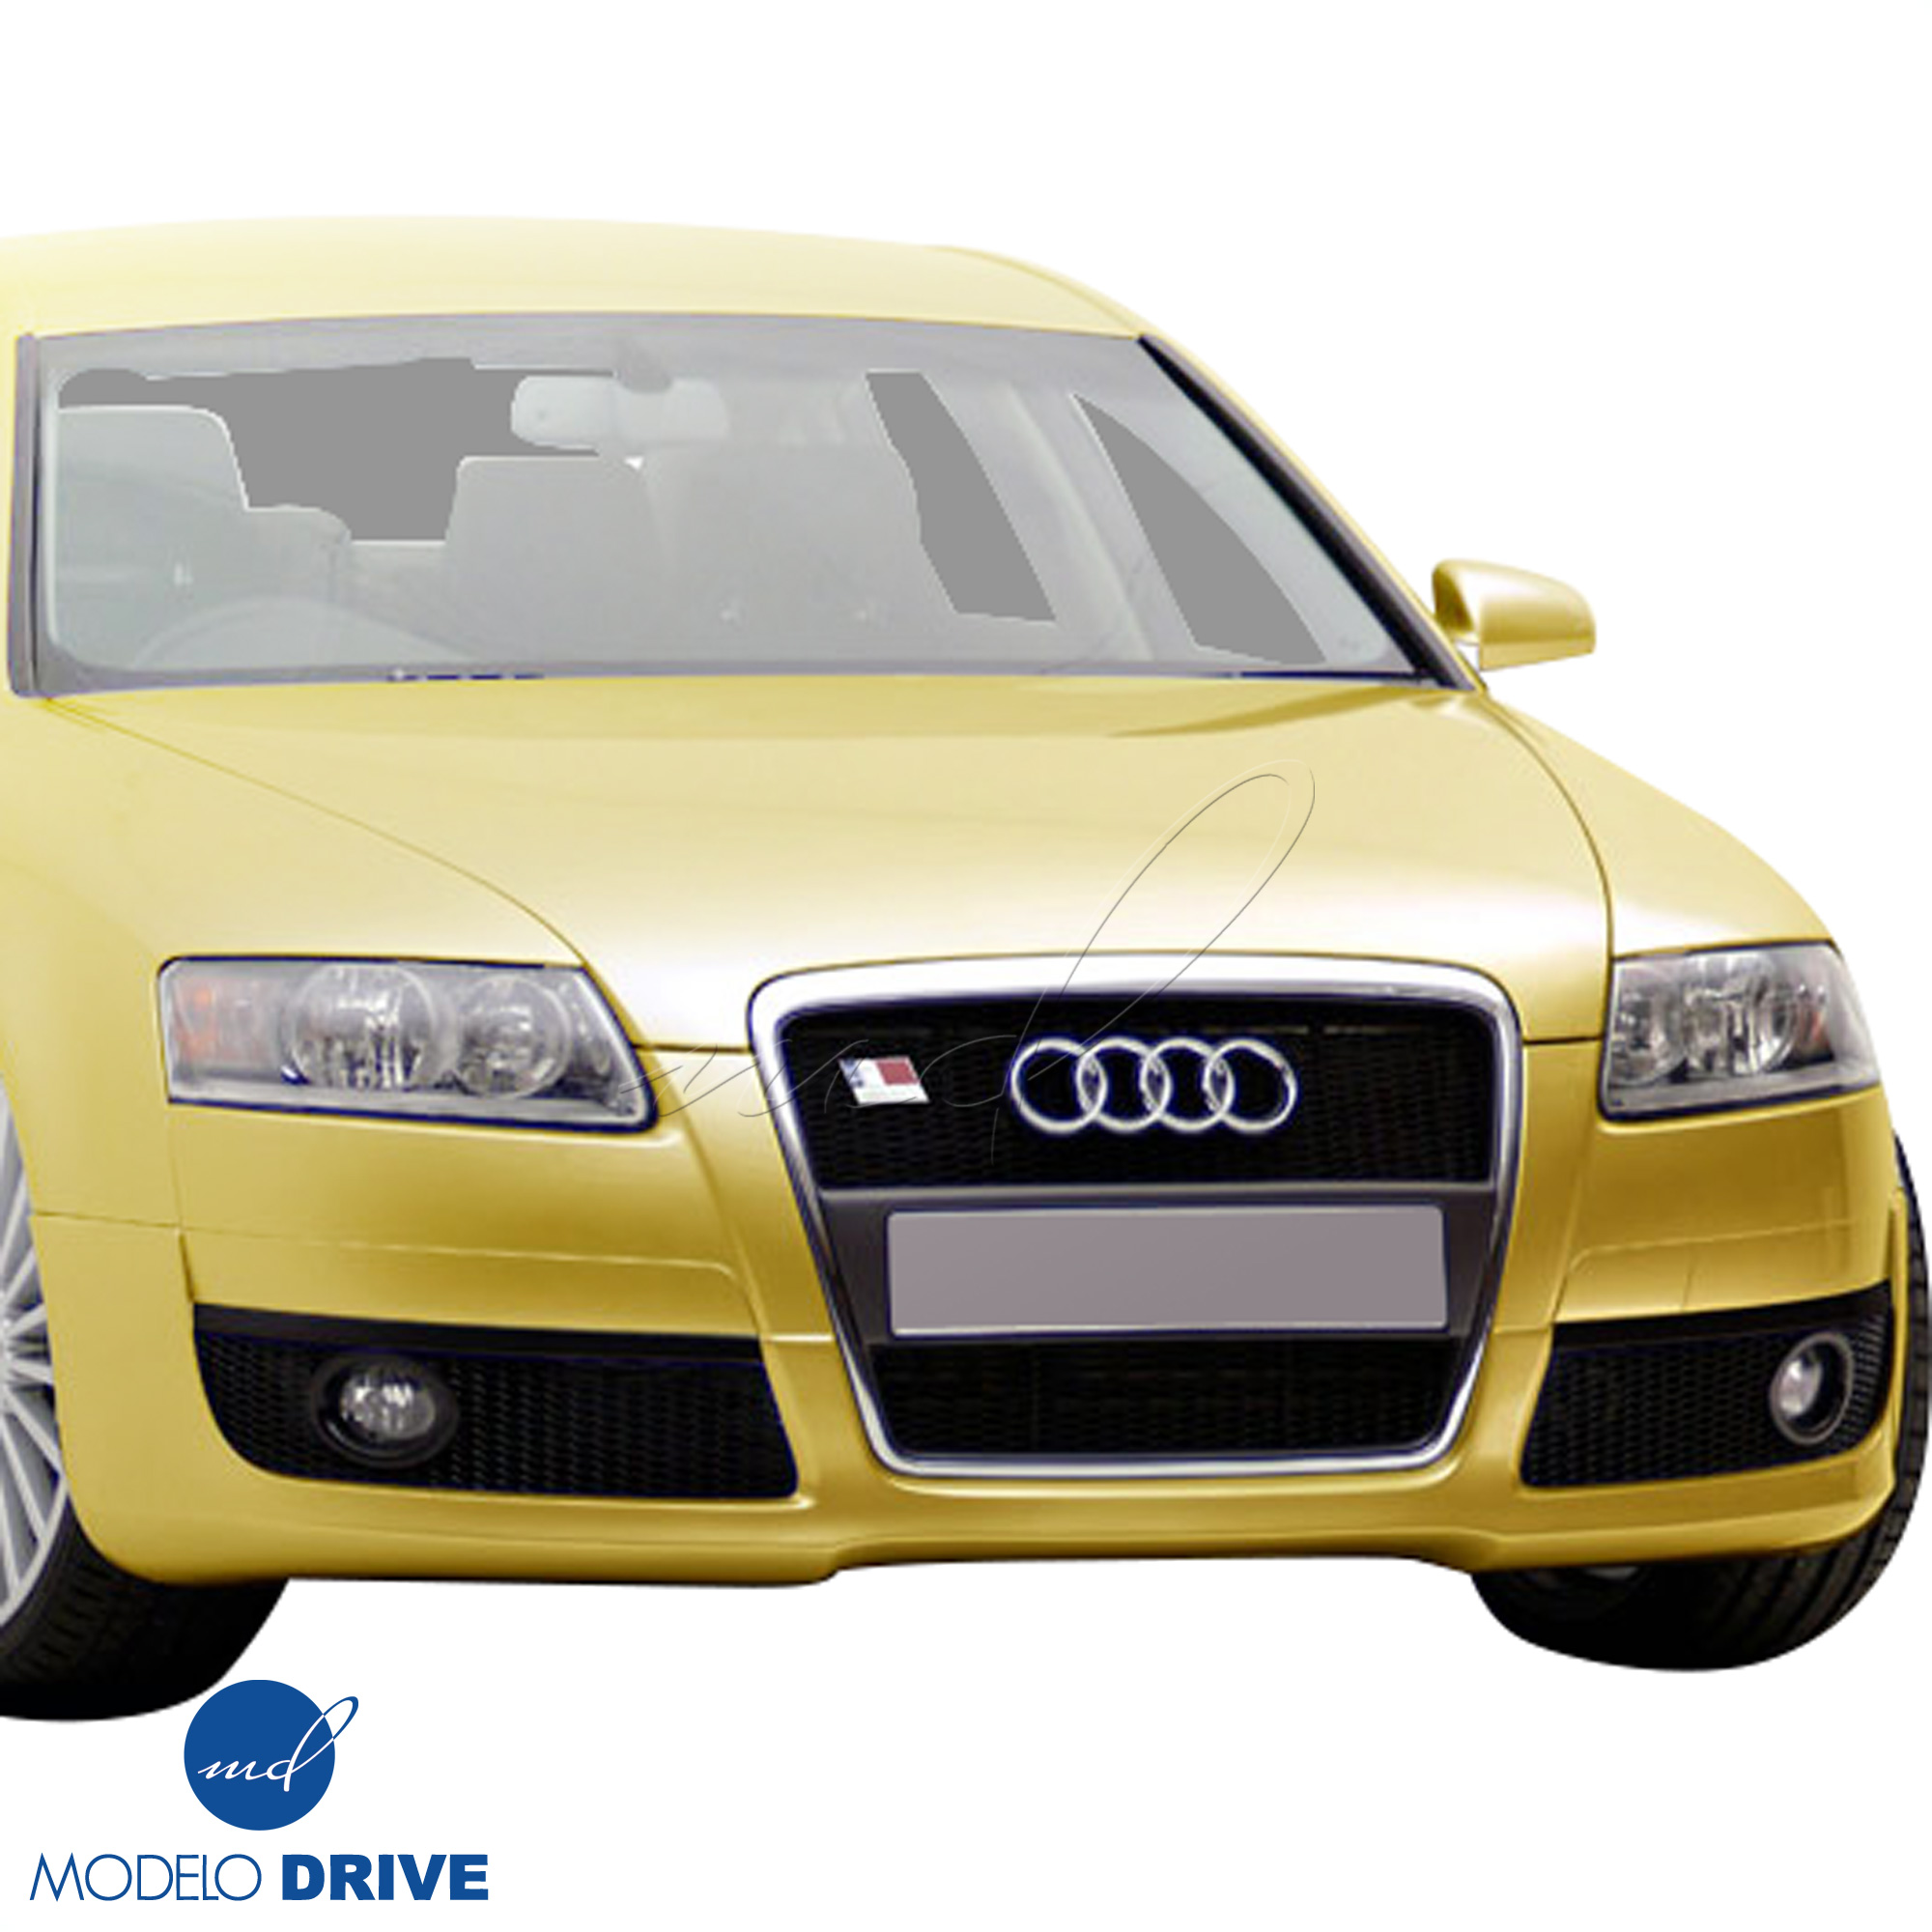 ModeloDrive FRP CE Front Lip Valance > Audi A6 C6 2008-2012 - Image 1